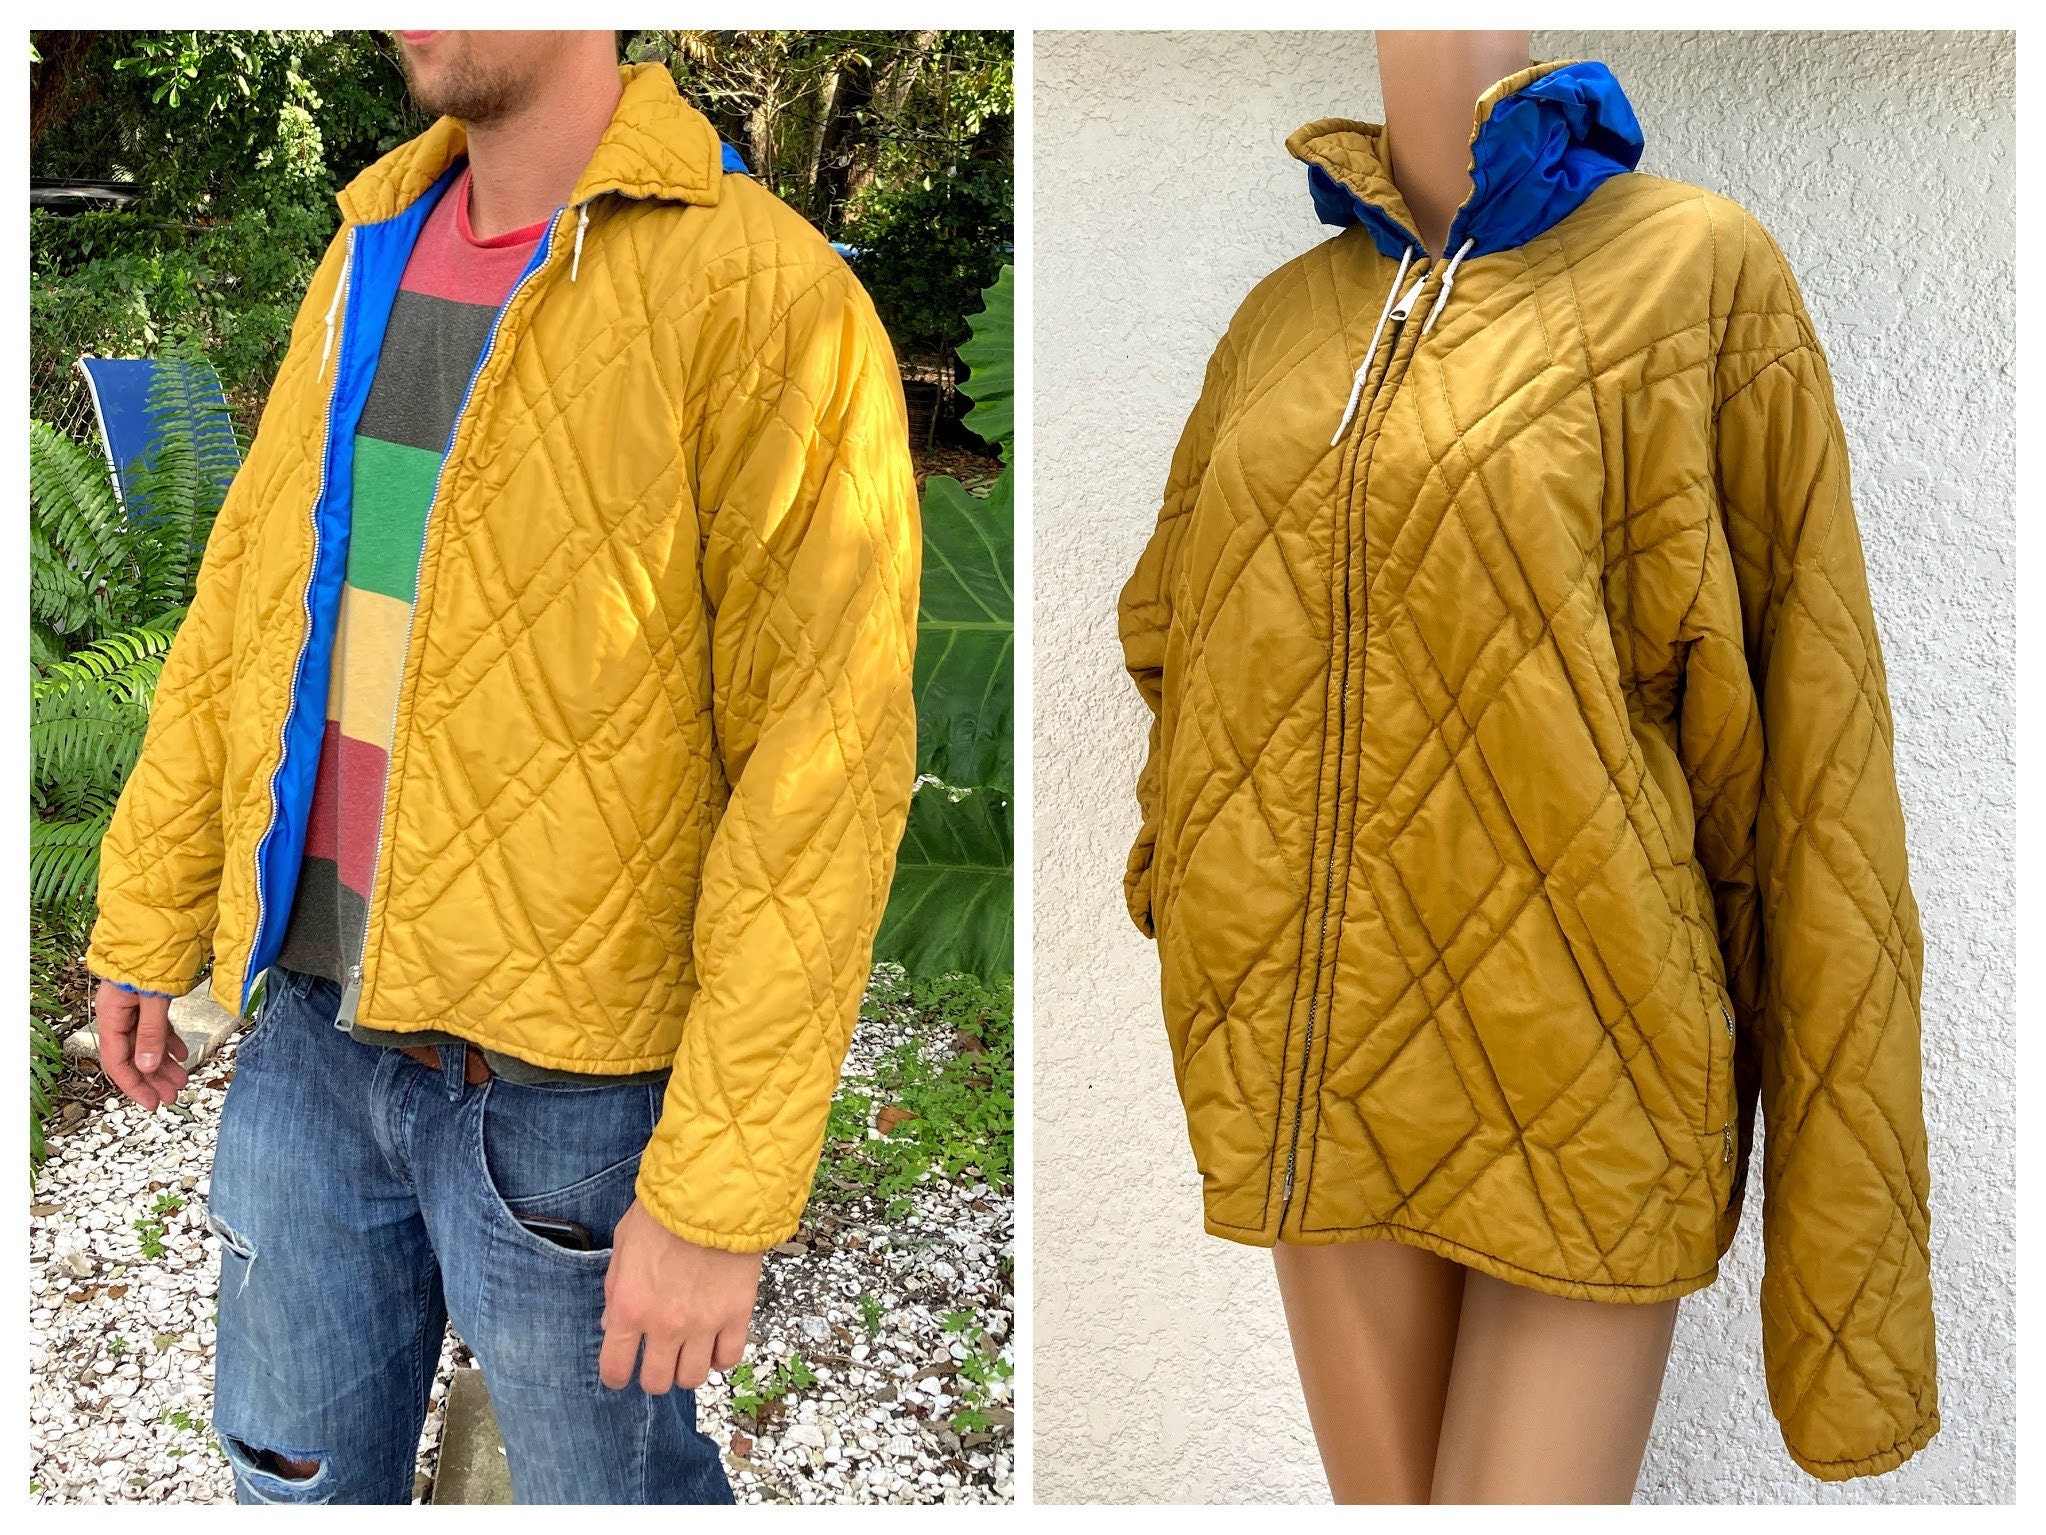 Men's L 70S Puffer Jacket With Hood By Sportcaster, Reversible, La Rams Colors, Rain Resistant, Measurements in Description